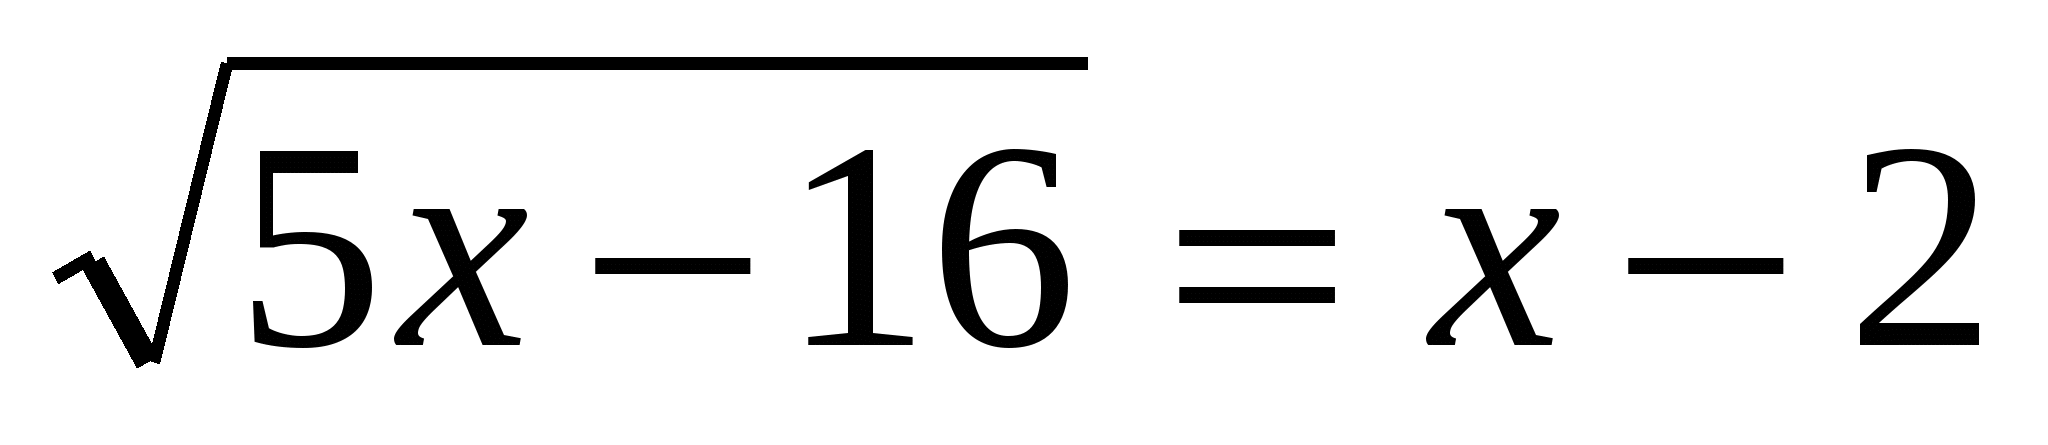 Решение уравнений урок 8 класс